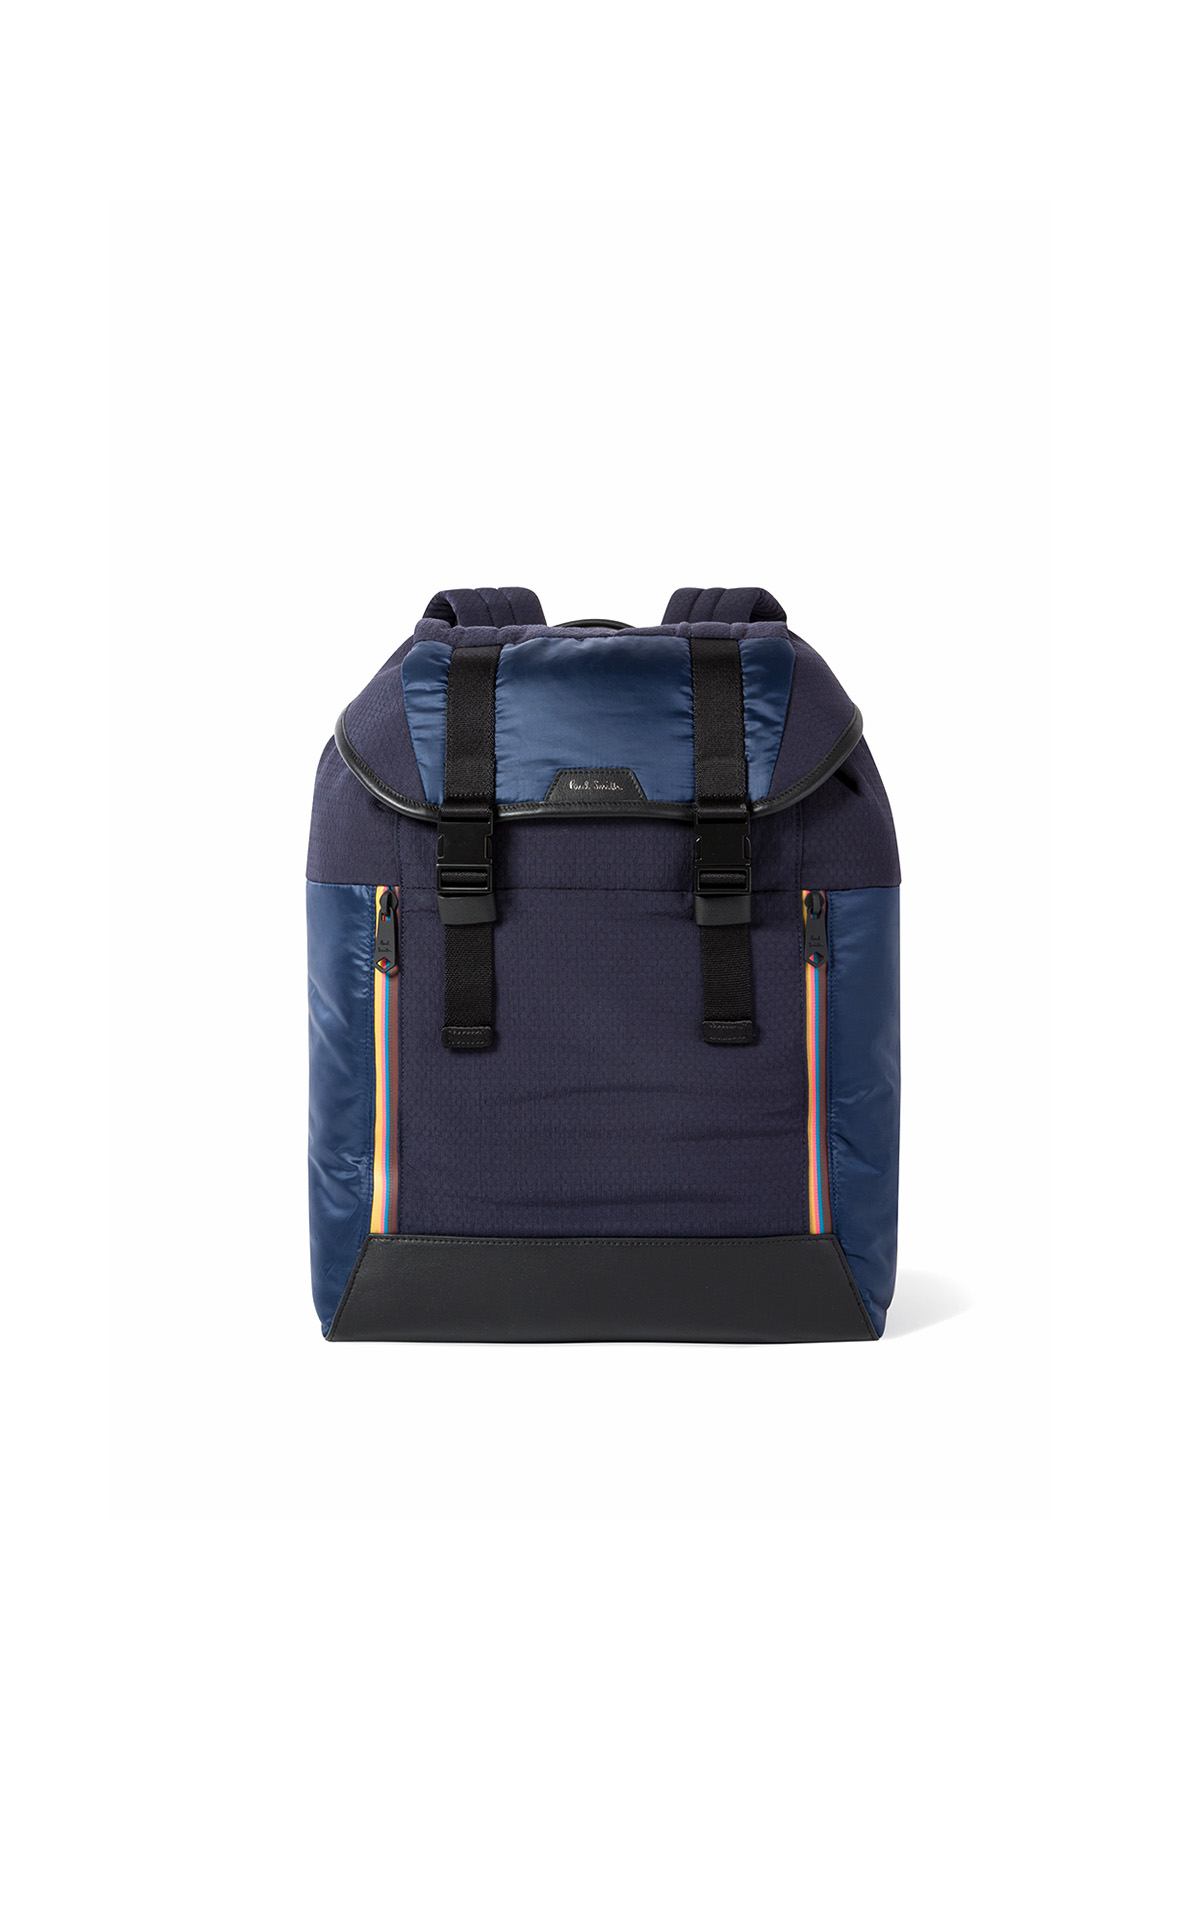 Navy blue backpack